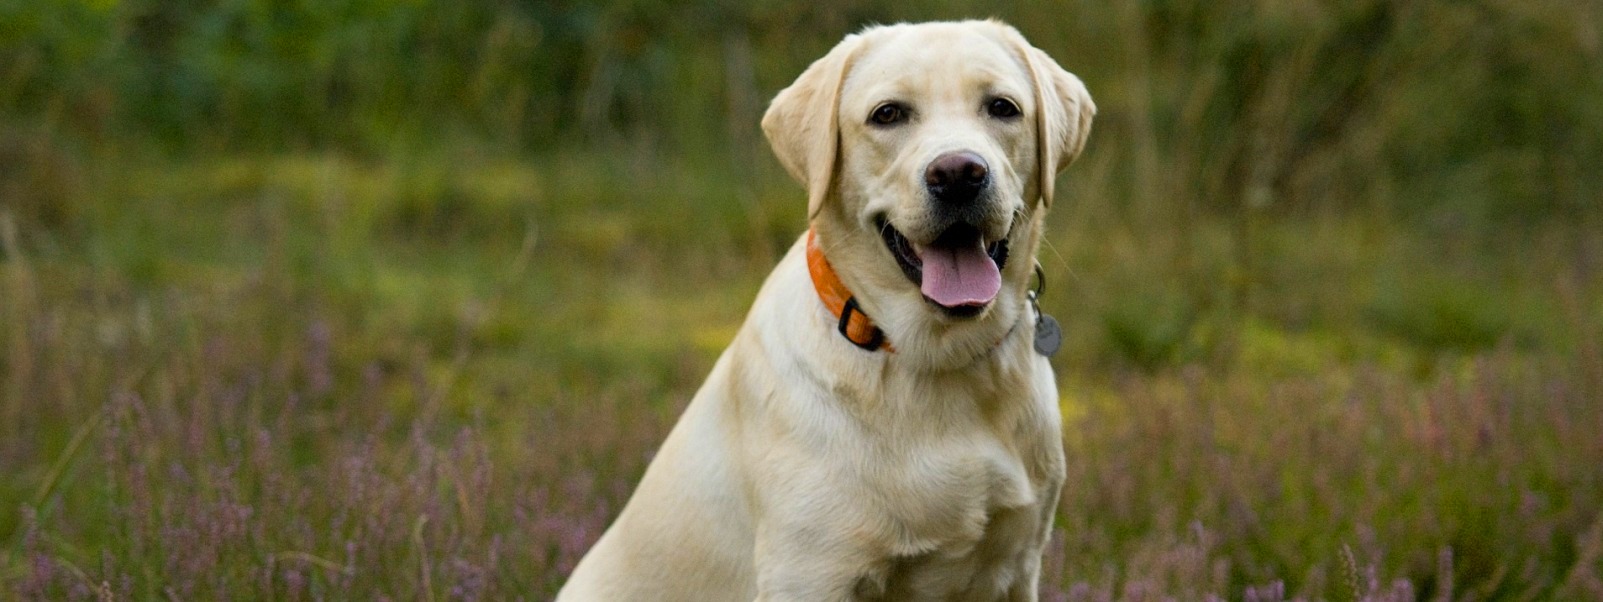 Labrador retriever z hodowli psów rasowych Perfect Breed